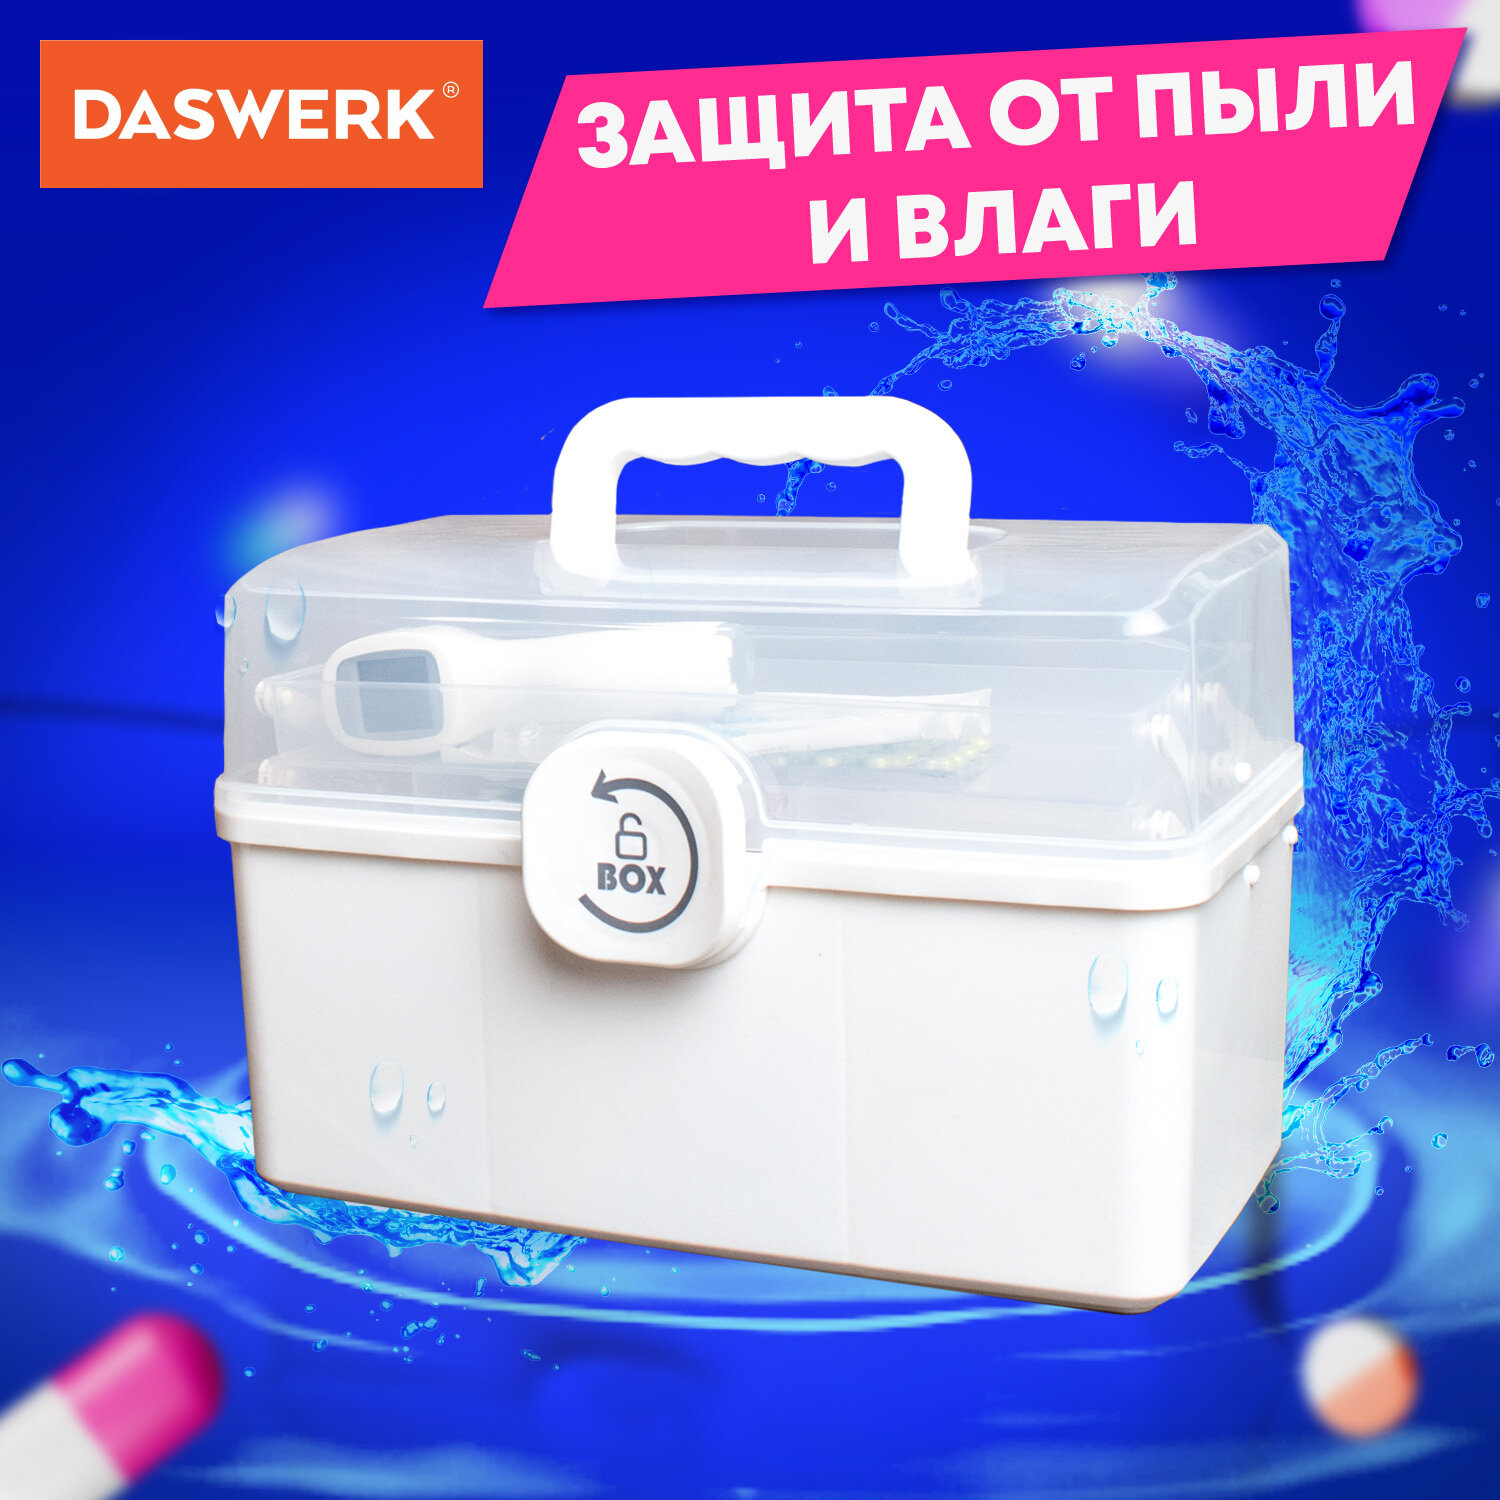 Аптечка DASWERK домашняя органайзер для хранения лекарств и витаминов - фото 5